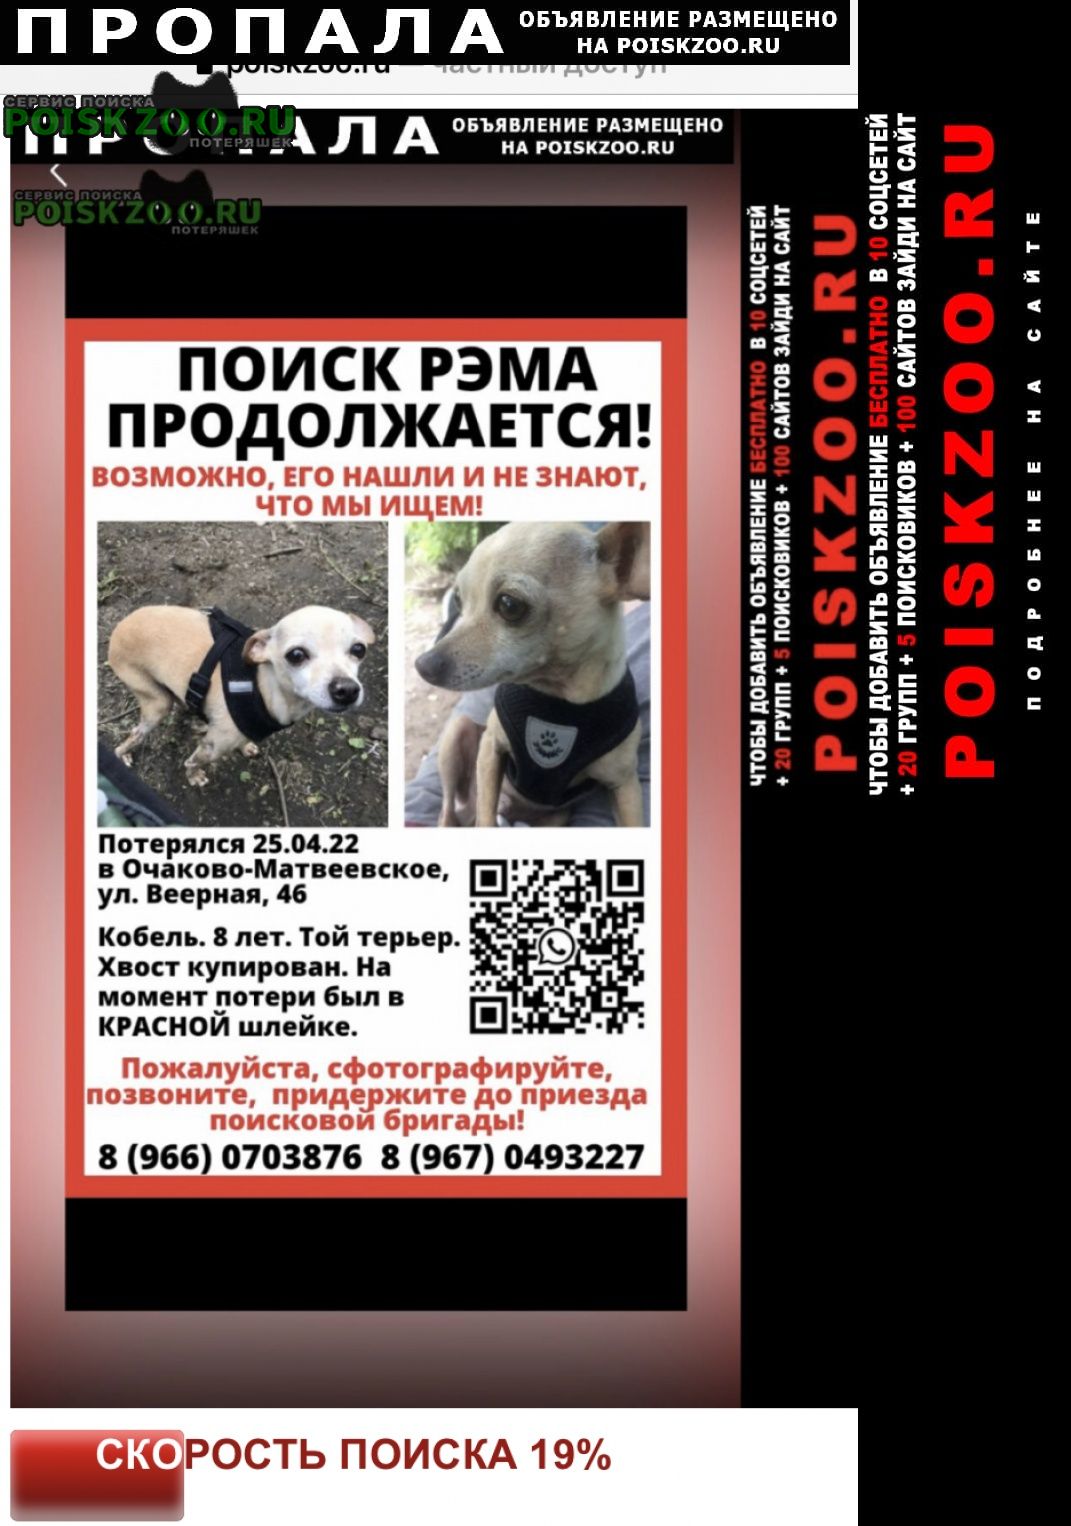 Пропала собака кобель повторно розыск той терьера Москва